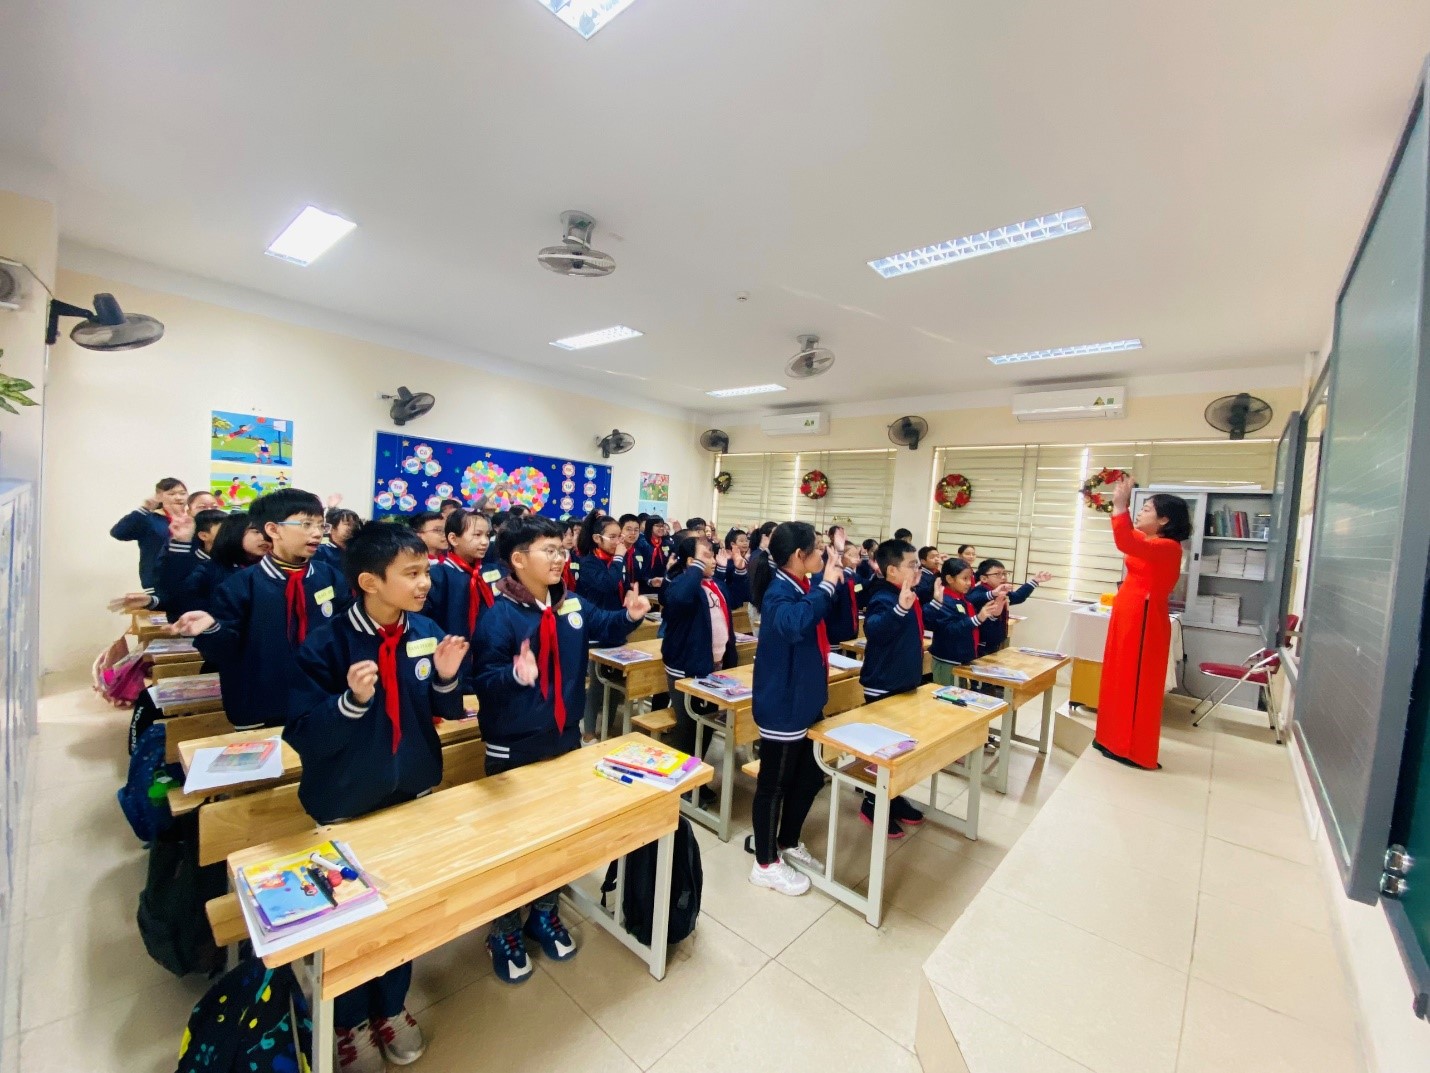 Chúc mừng cô giáo Đào Thanh Huyền- Giáo viên Tiếng Anh - Trường Tiểu học Việt Nam - Cu Ba đã hoàn thành xuất sắc nhiệm vụ trong cuộc thi giáo viên dạy giỏi cấp Quận ngày 22/12/2022 vừa qua.